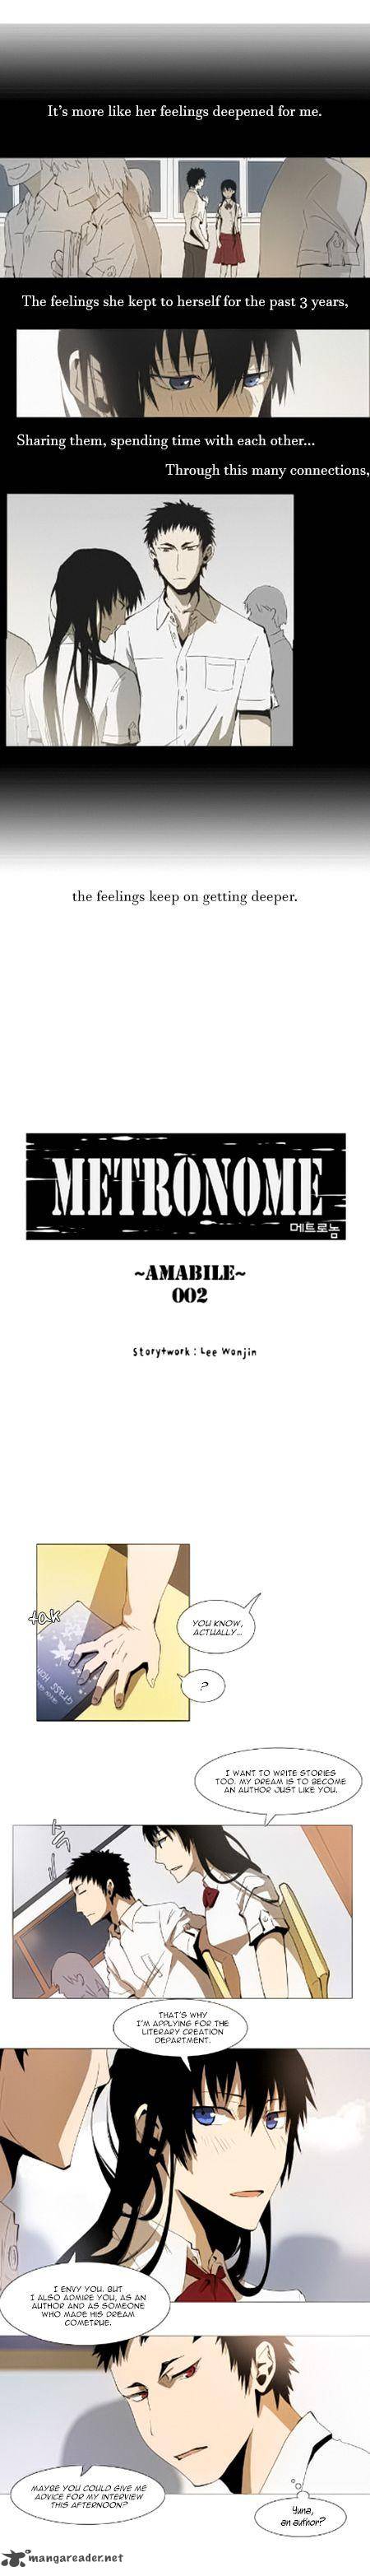 metronome_33_5